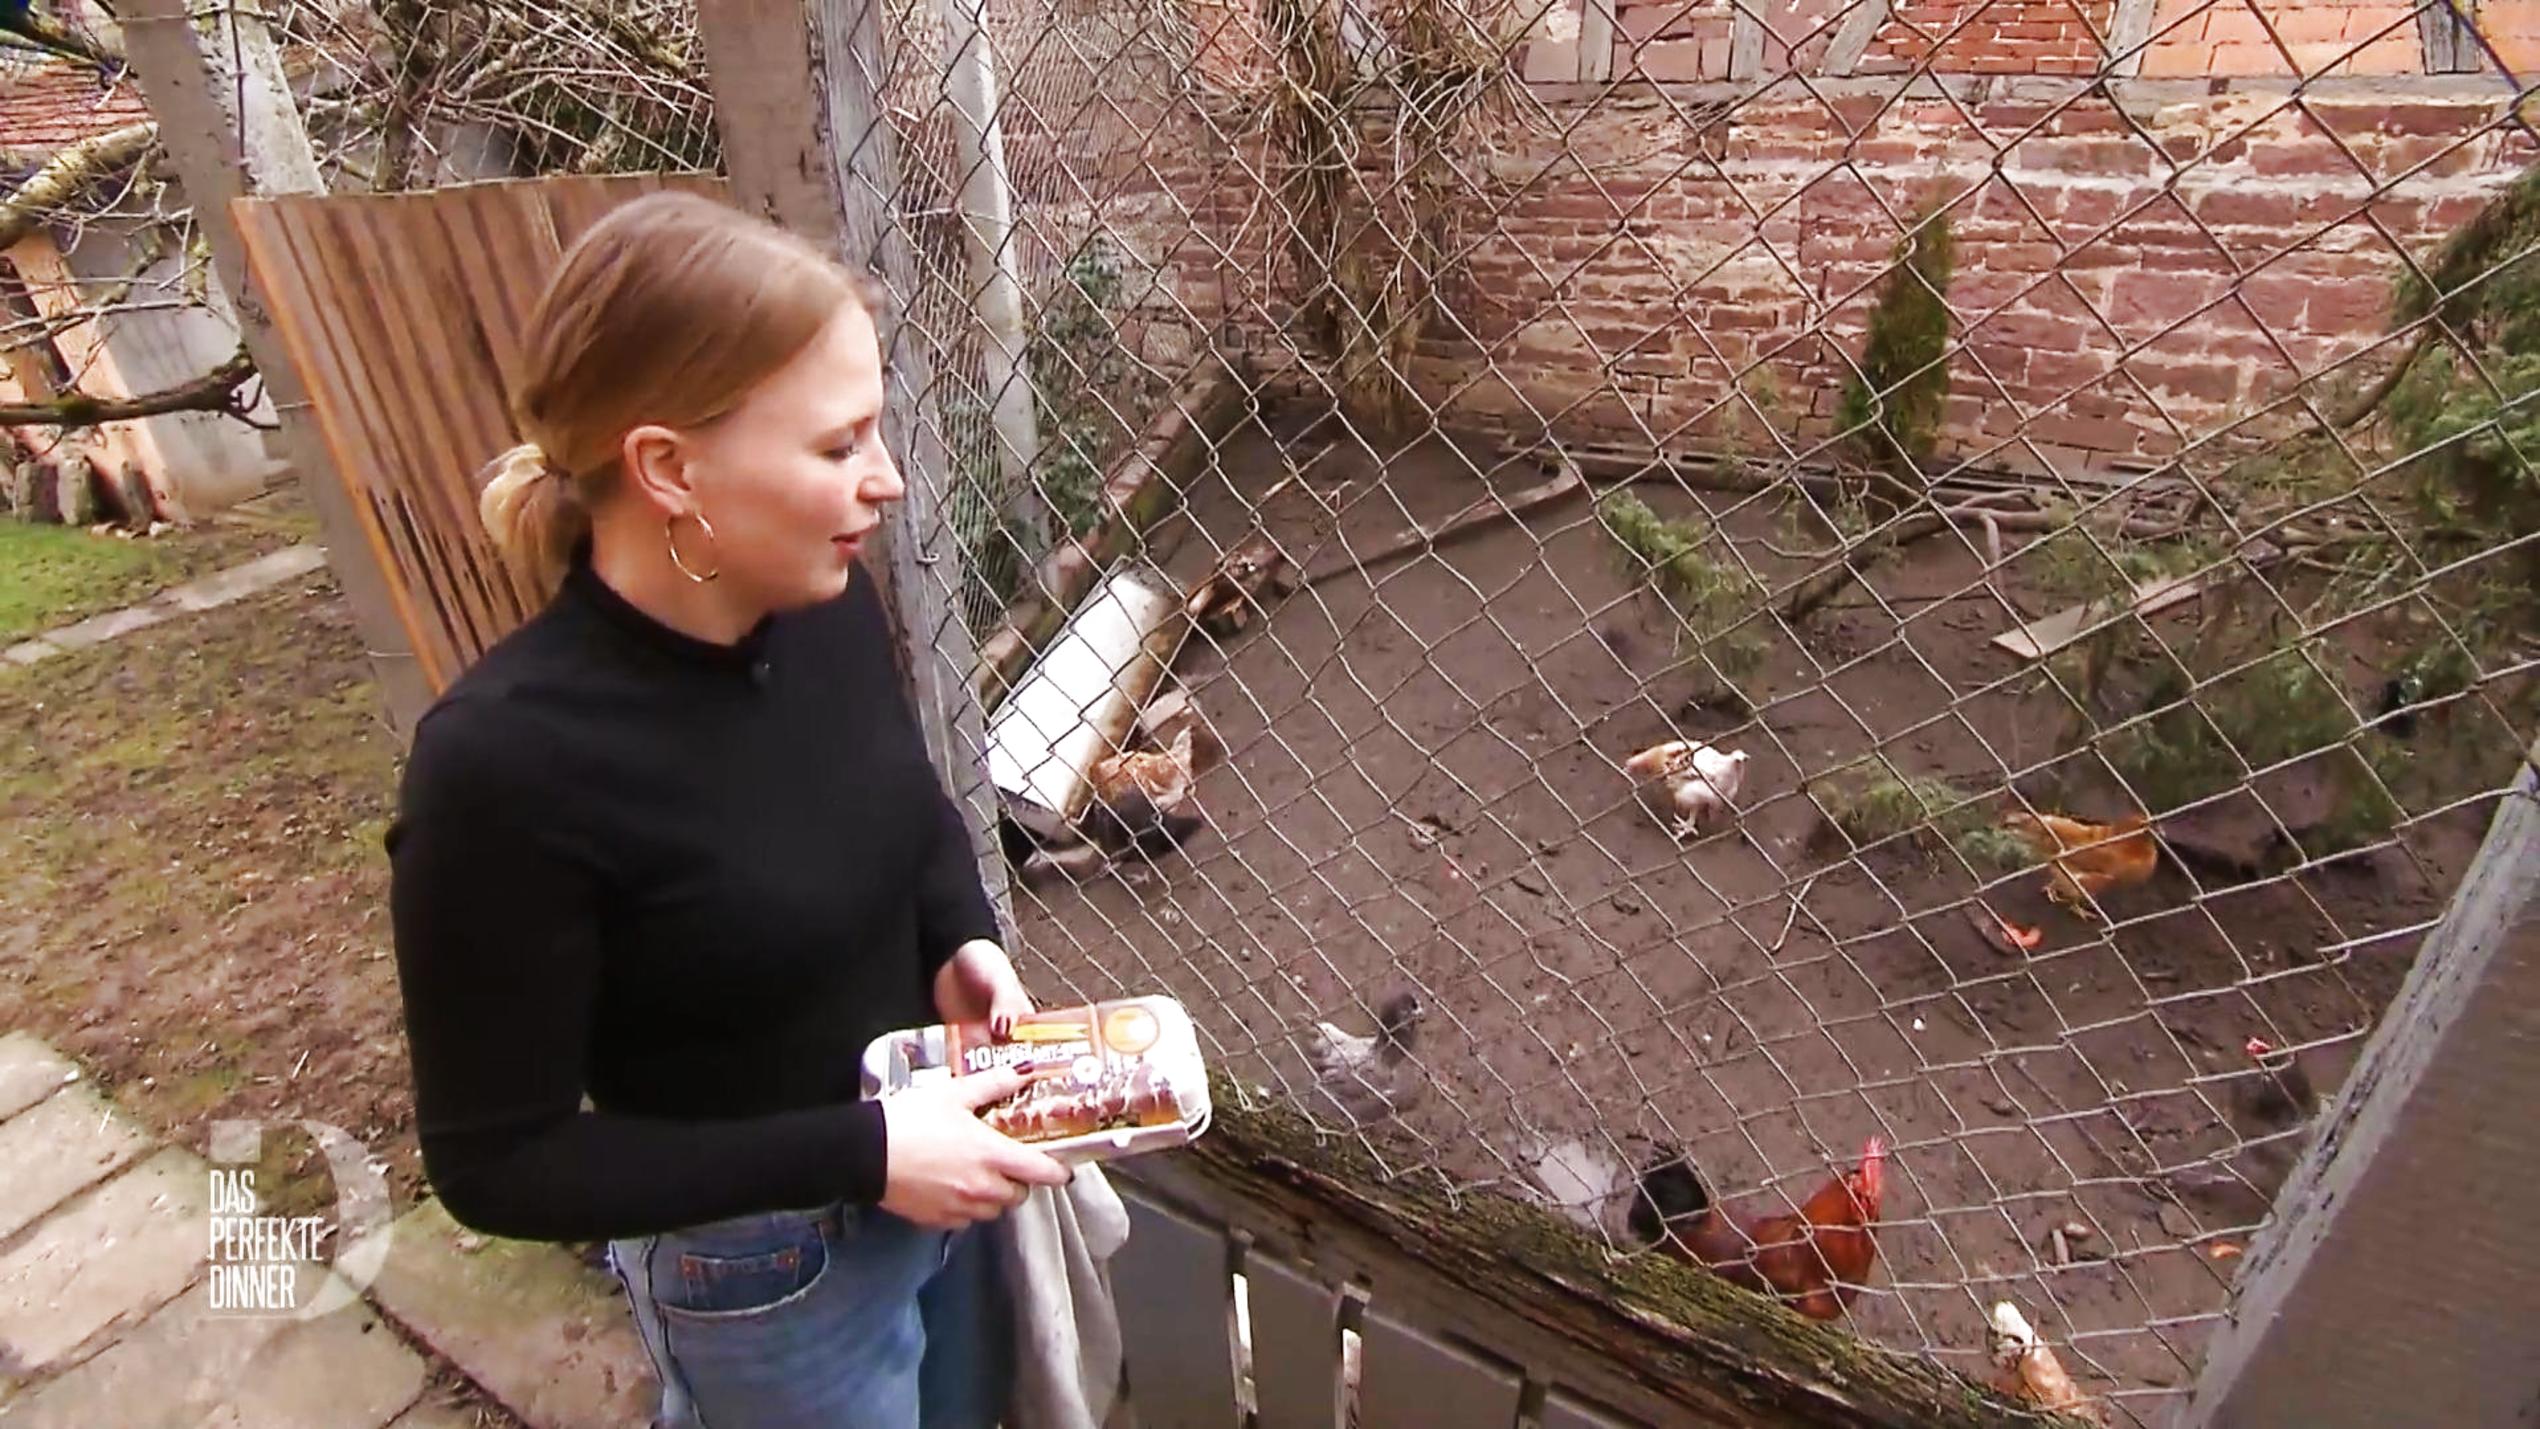 "Das perfekte Dinner"-Kandidatin Lisa Marie bei ihren Lieblingen, ihren eigenen Hühnern